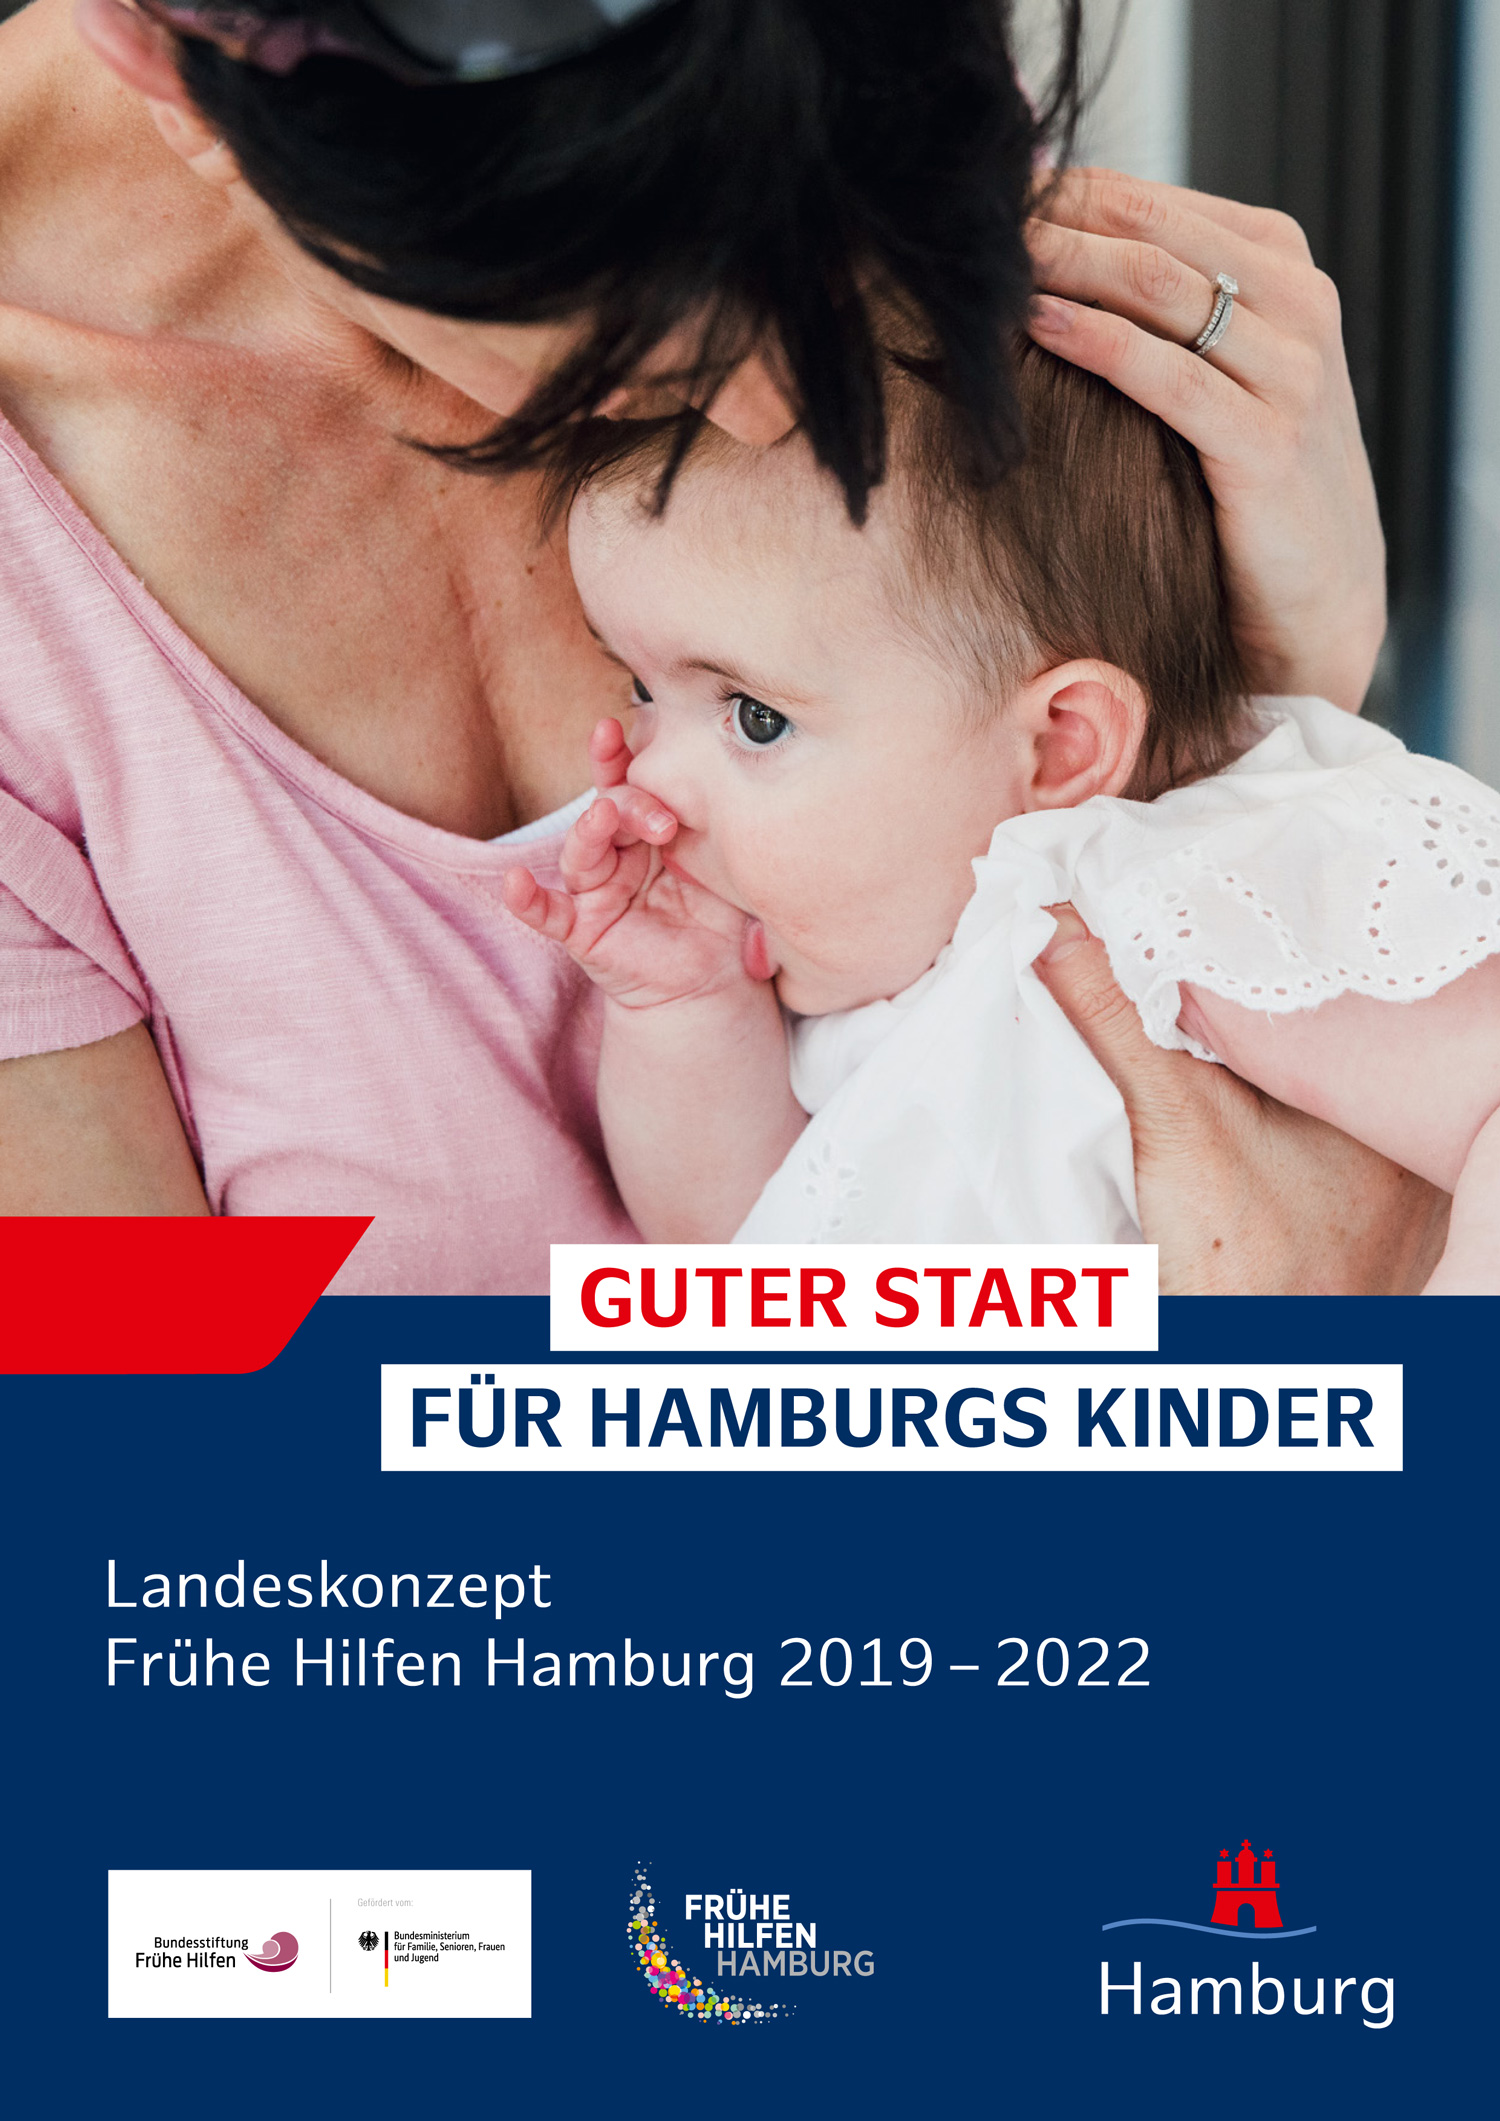 Eine Frau halt eine Säugling im Arm, darunter der Text: Guter Start für Hamburgs Kinder - Landeskonzept Frühe Hilfen Hamburg 2019 – 2022